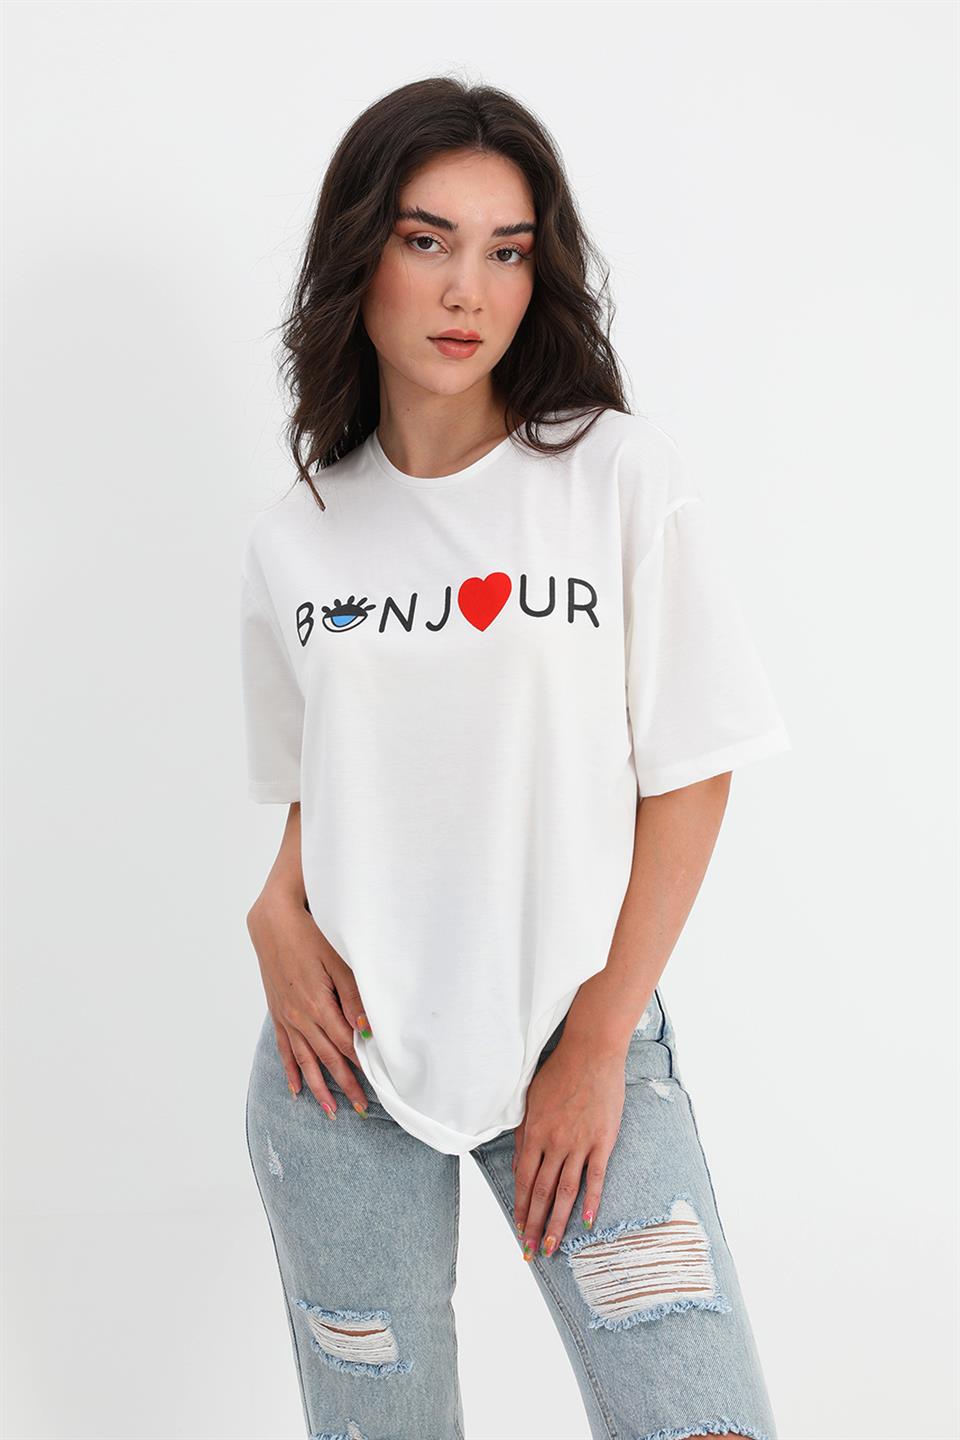 Women's T-shirt Crew Neck Bonjour Written - White - STREET MODE ™